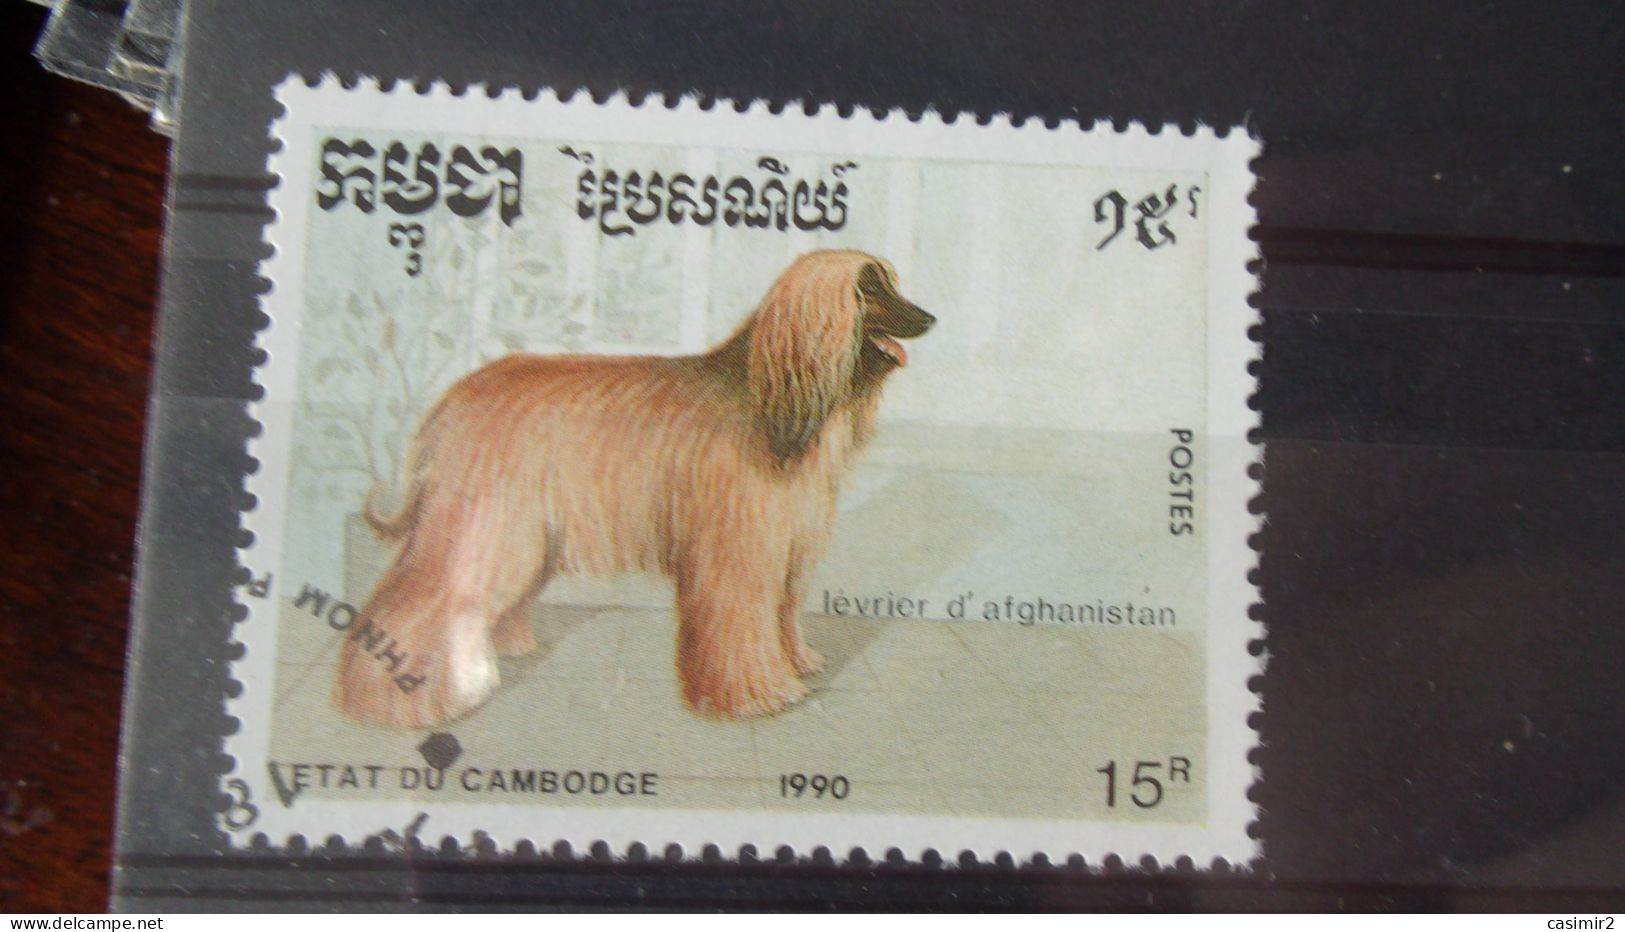 CAMBODGE YVERT N°932 - Cambodia